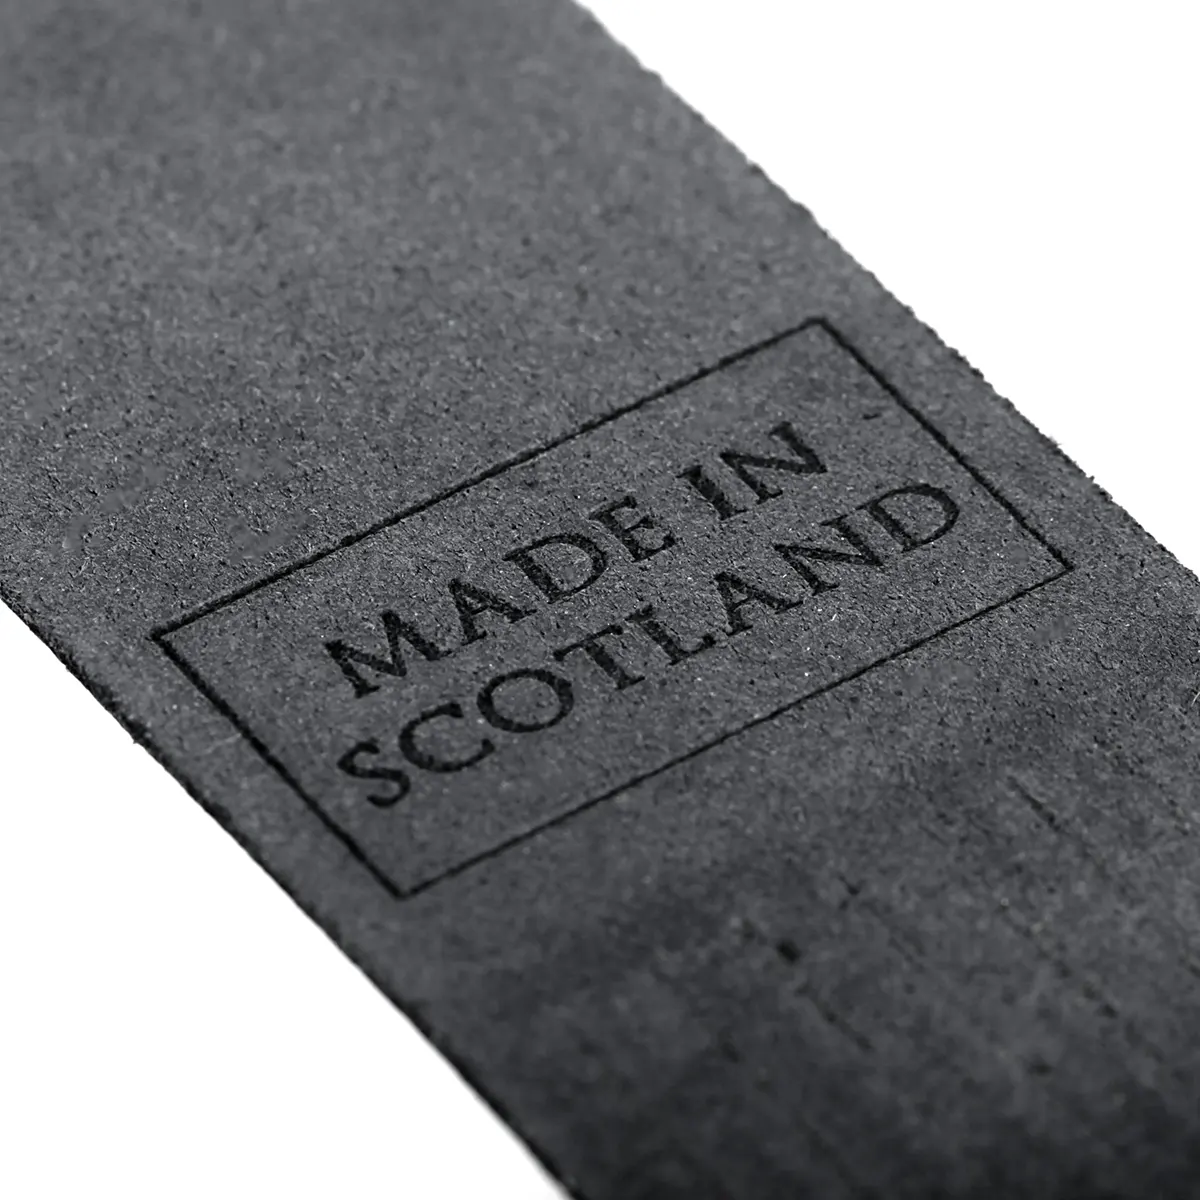 Iona - Lesezeichen aus Leder in Schwarz - Made in Scotland